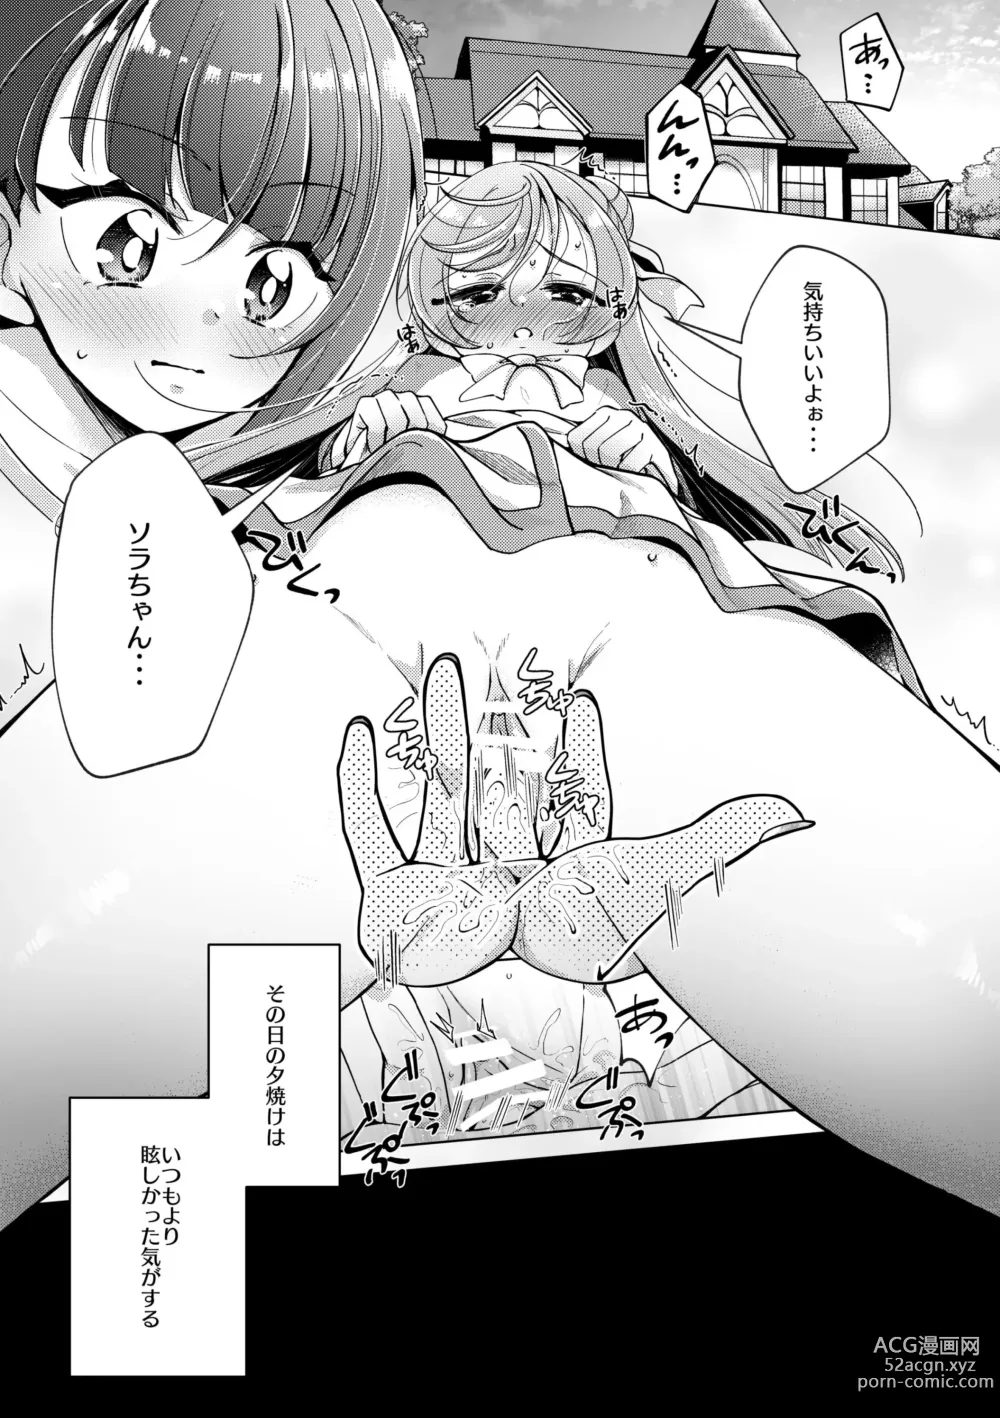 Page 4 of doujinshi Zankou no Sora